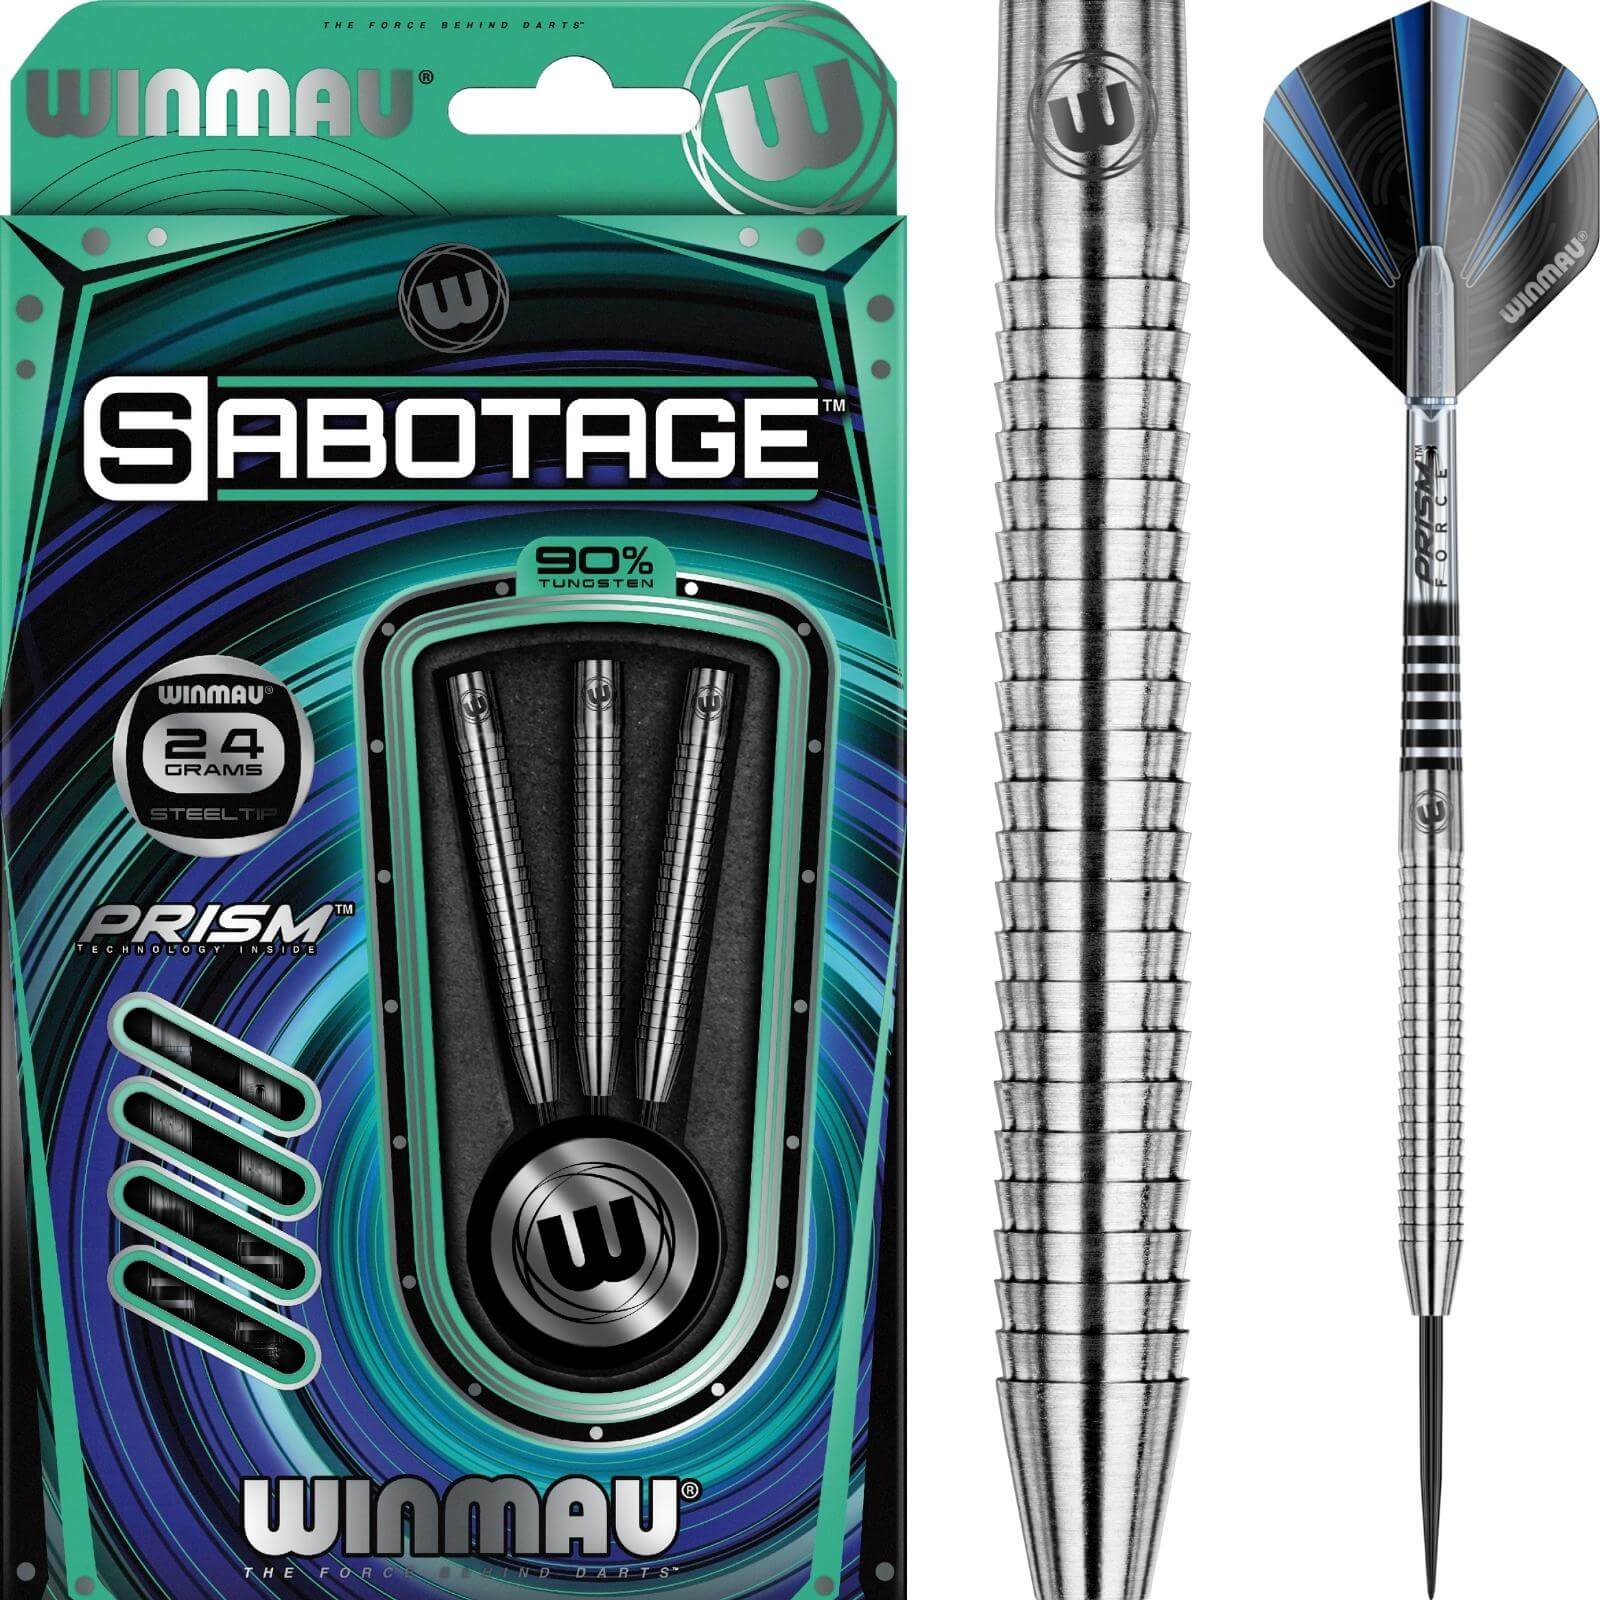 Darts - Winmau - Sabotage Darts - Steel Tip - 90% Tungsten - 22g 24g 26g 